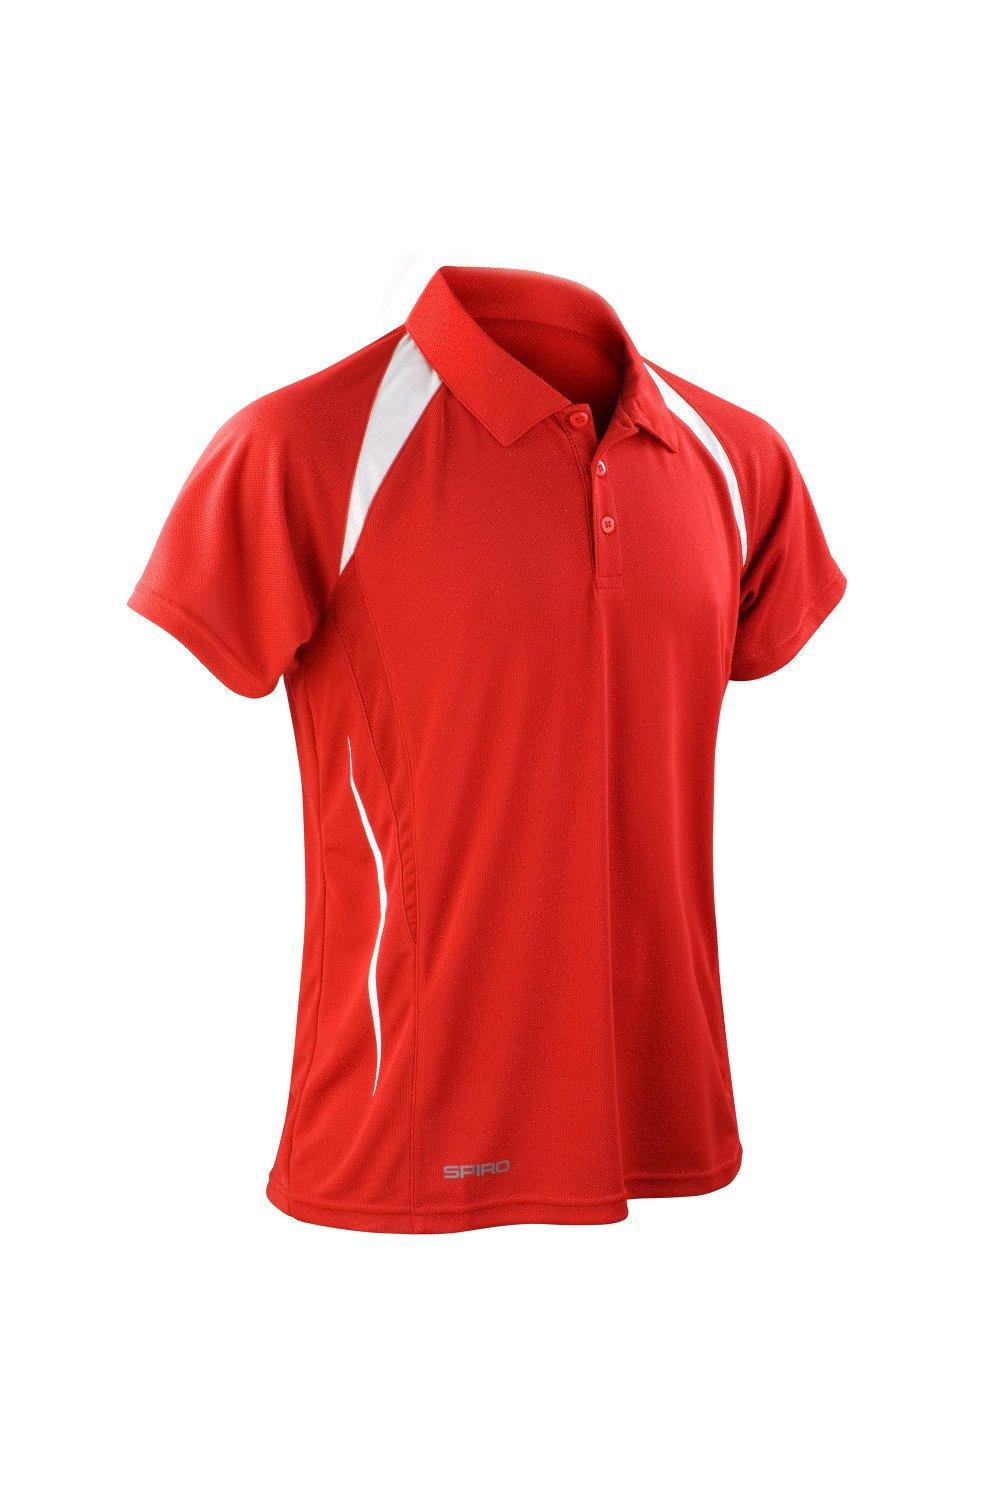 Рубашка поло Sports Team Spirit Performance Spiro, красный цена и фото